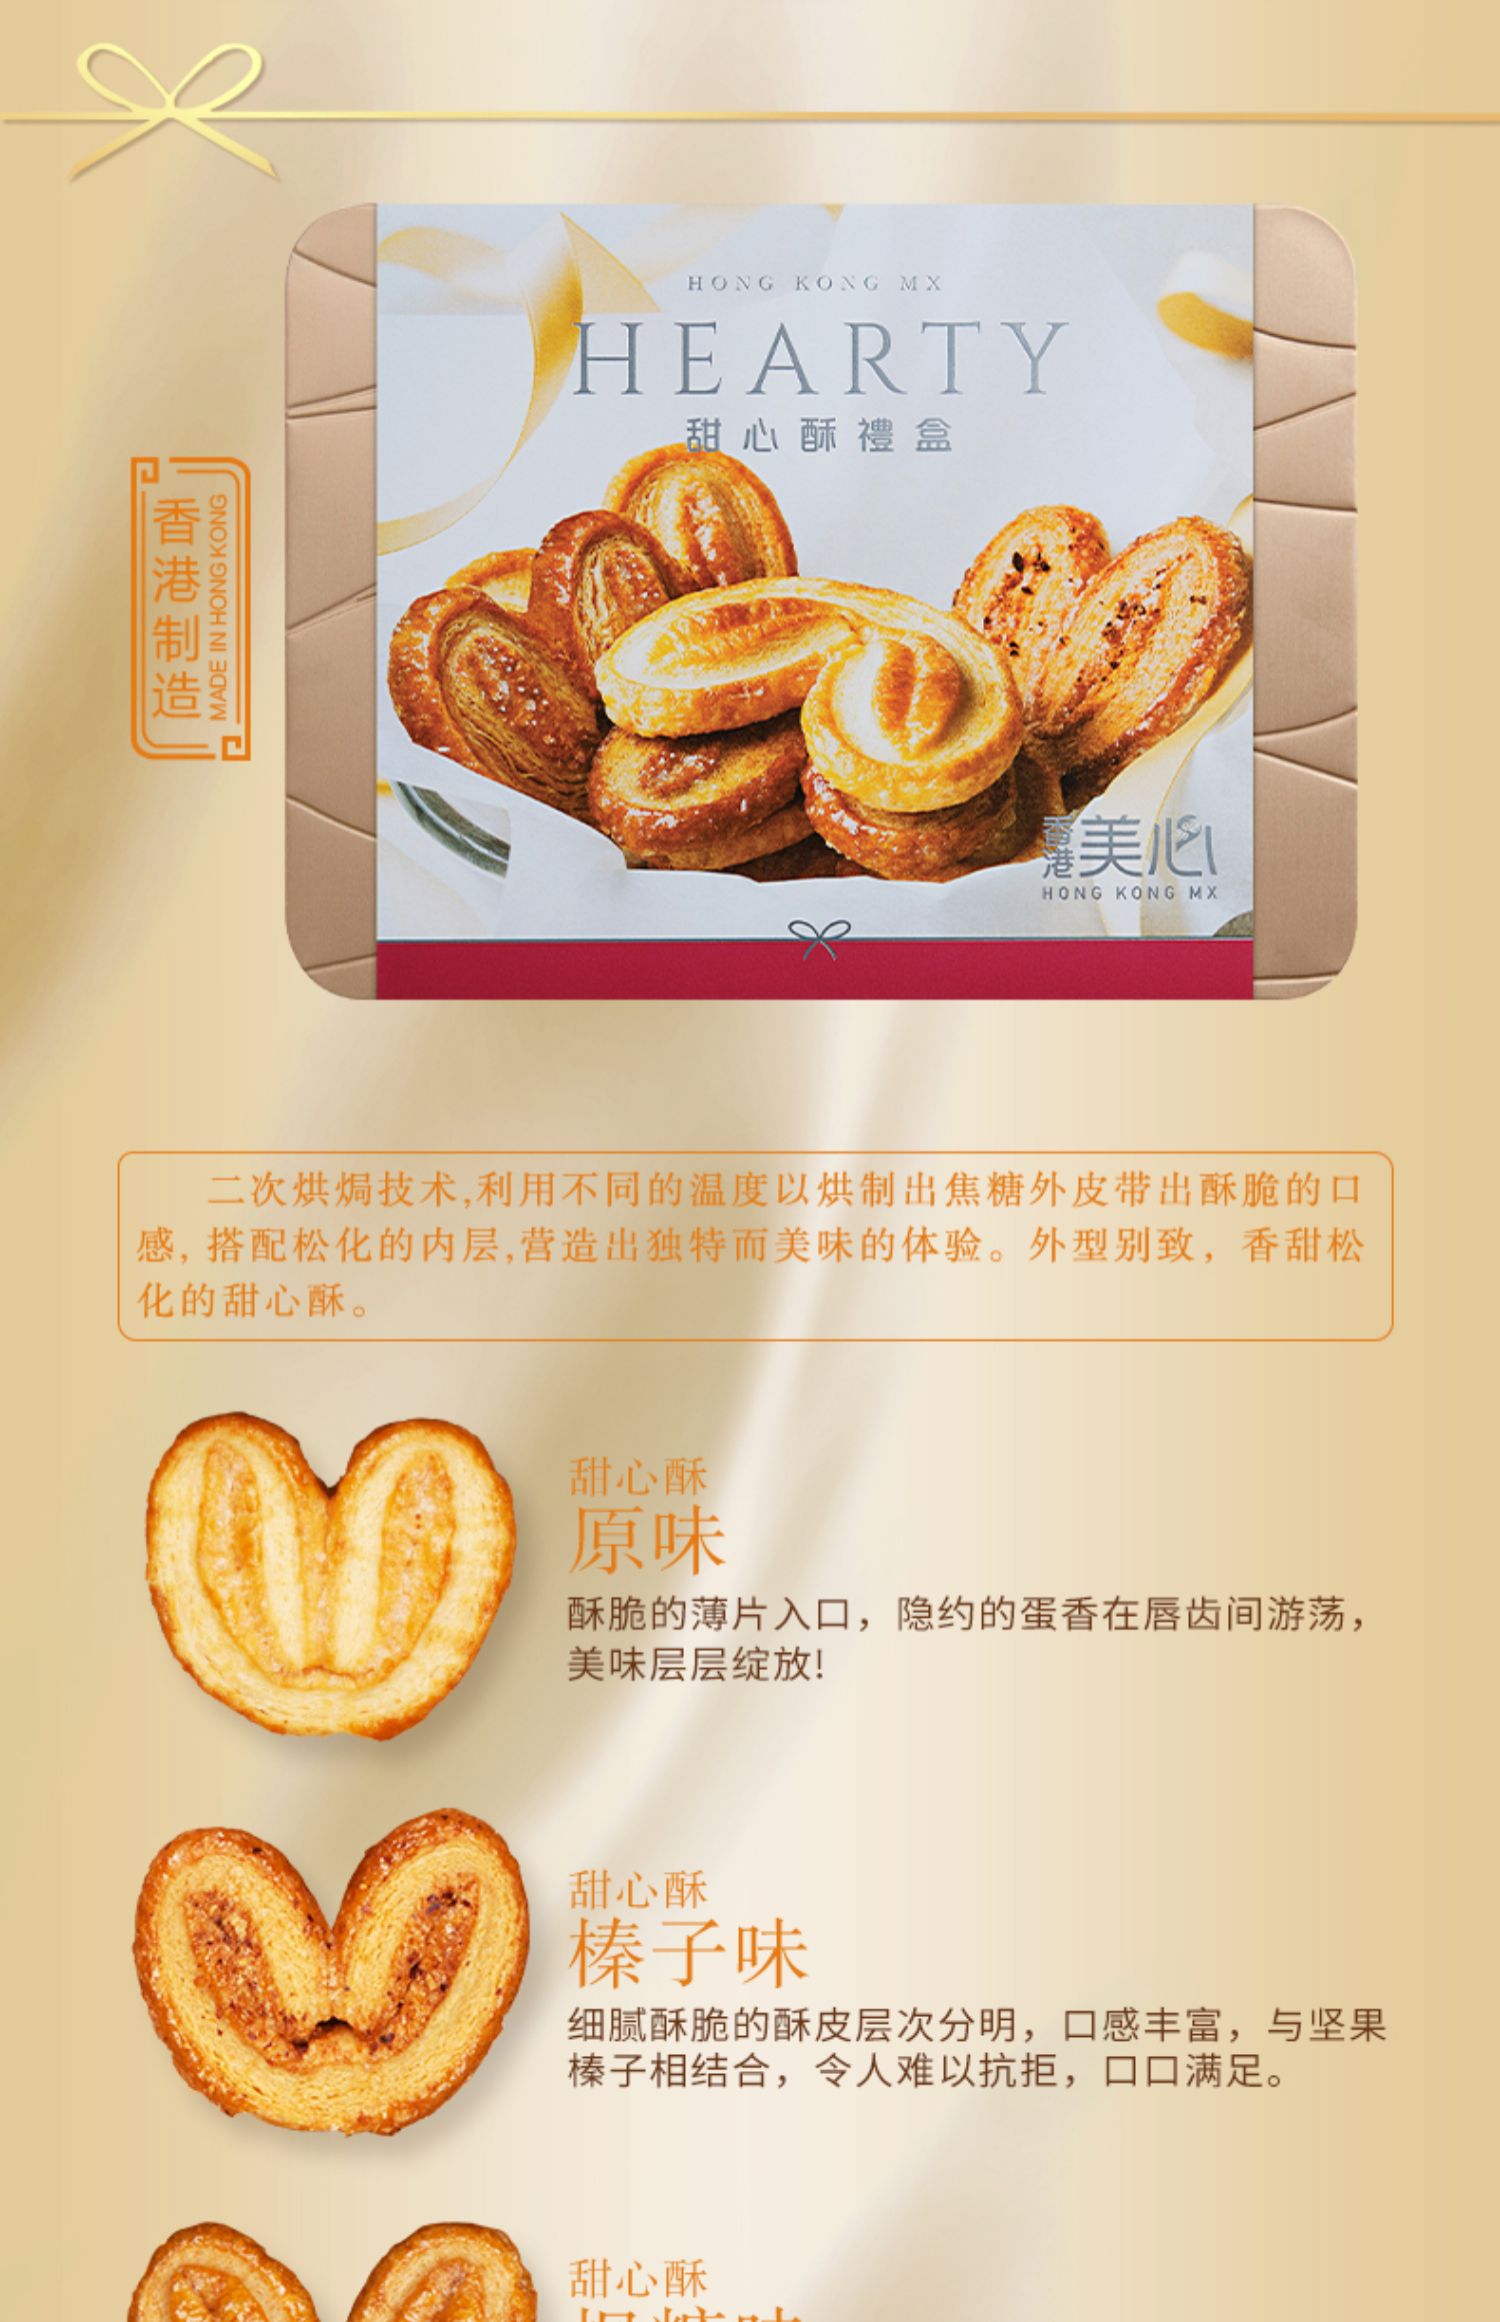 中国香港美心精致原味鸡蛋卷饼干礼盒